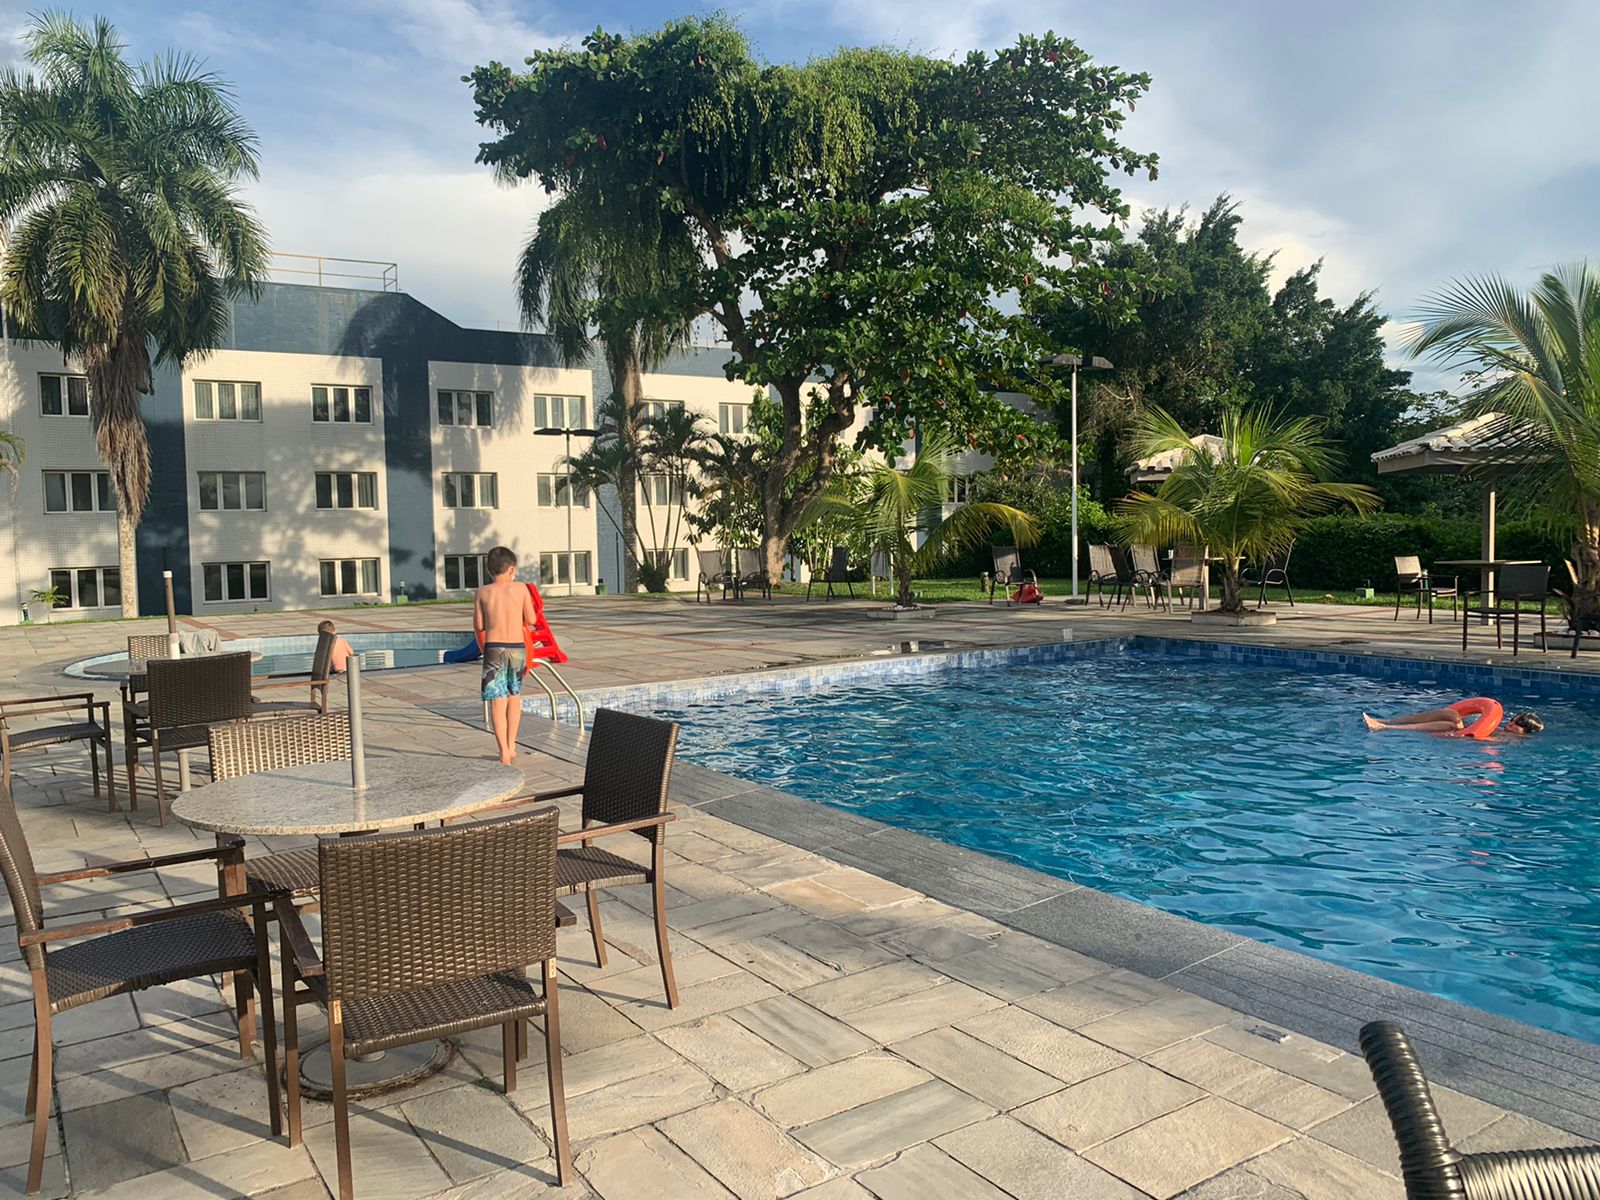 piscina retangular com palmeiras e prédio de hotel ao fundo